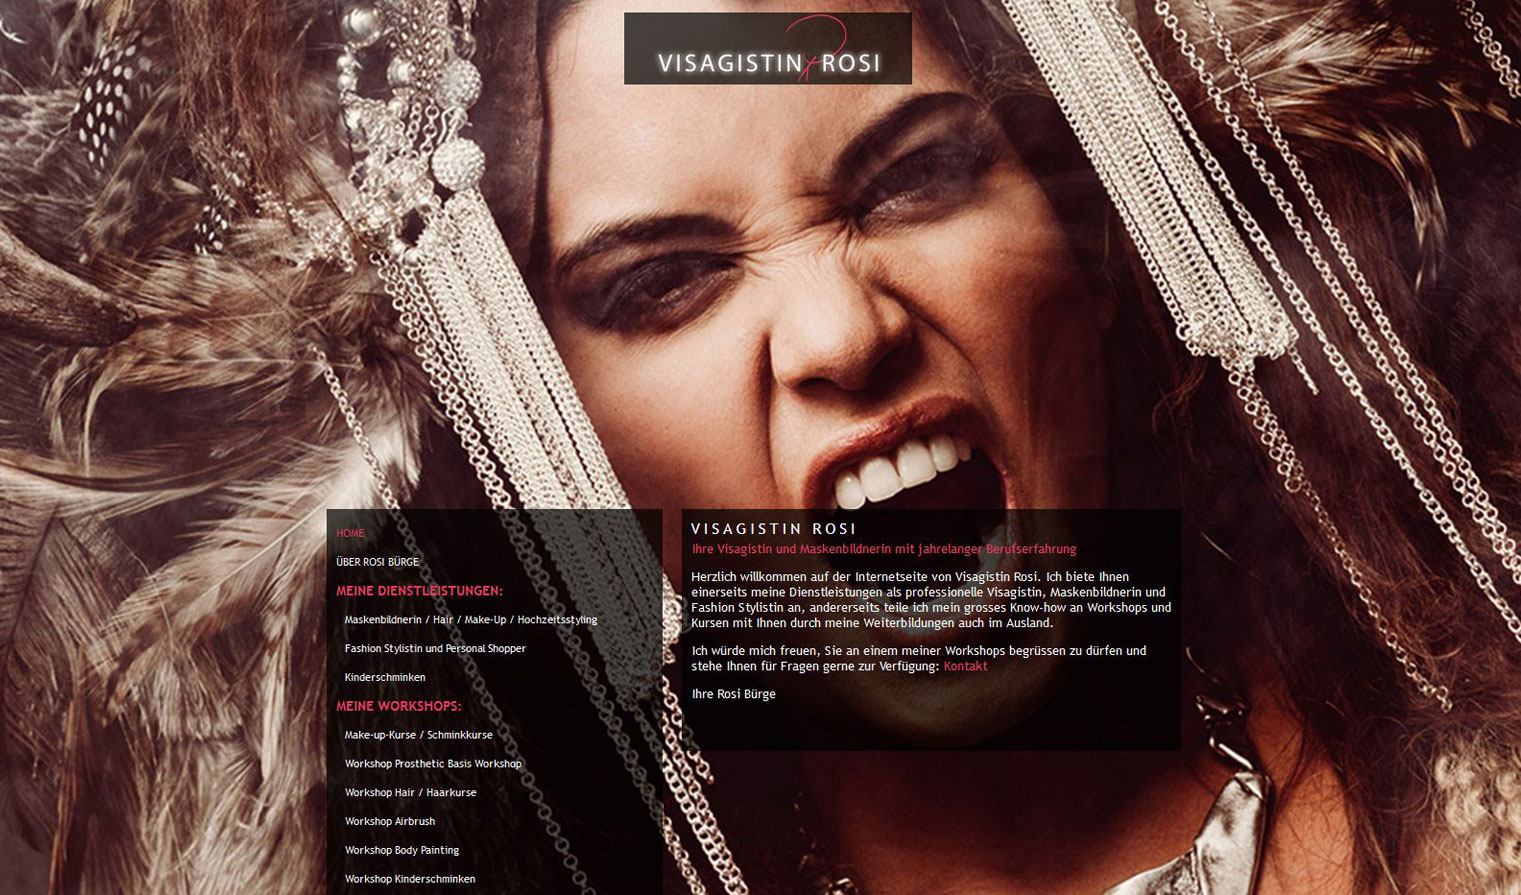 Grossartige Fotografien namhafter Künstler mit weltklasse Models zeichnen diese Website von Visagistin Rosi aus